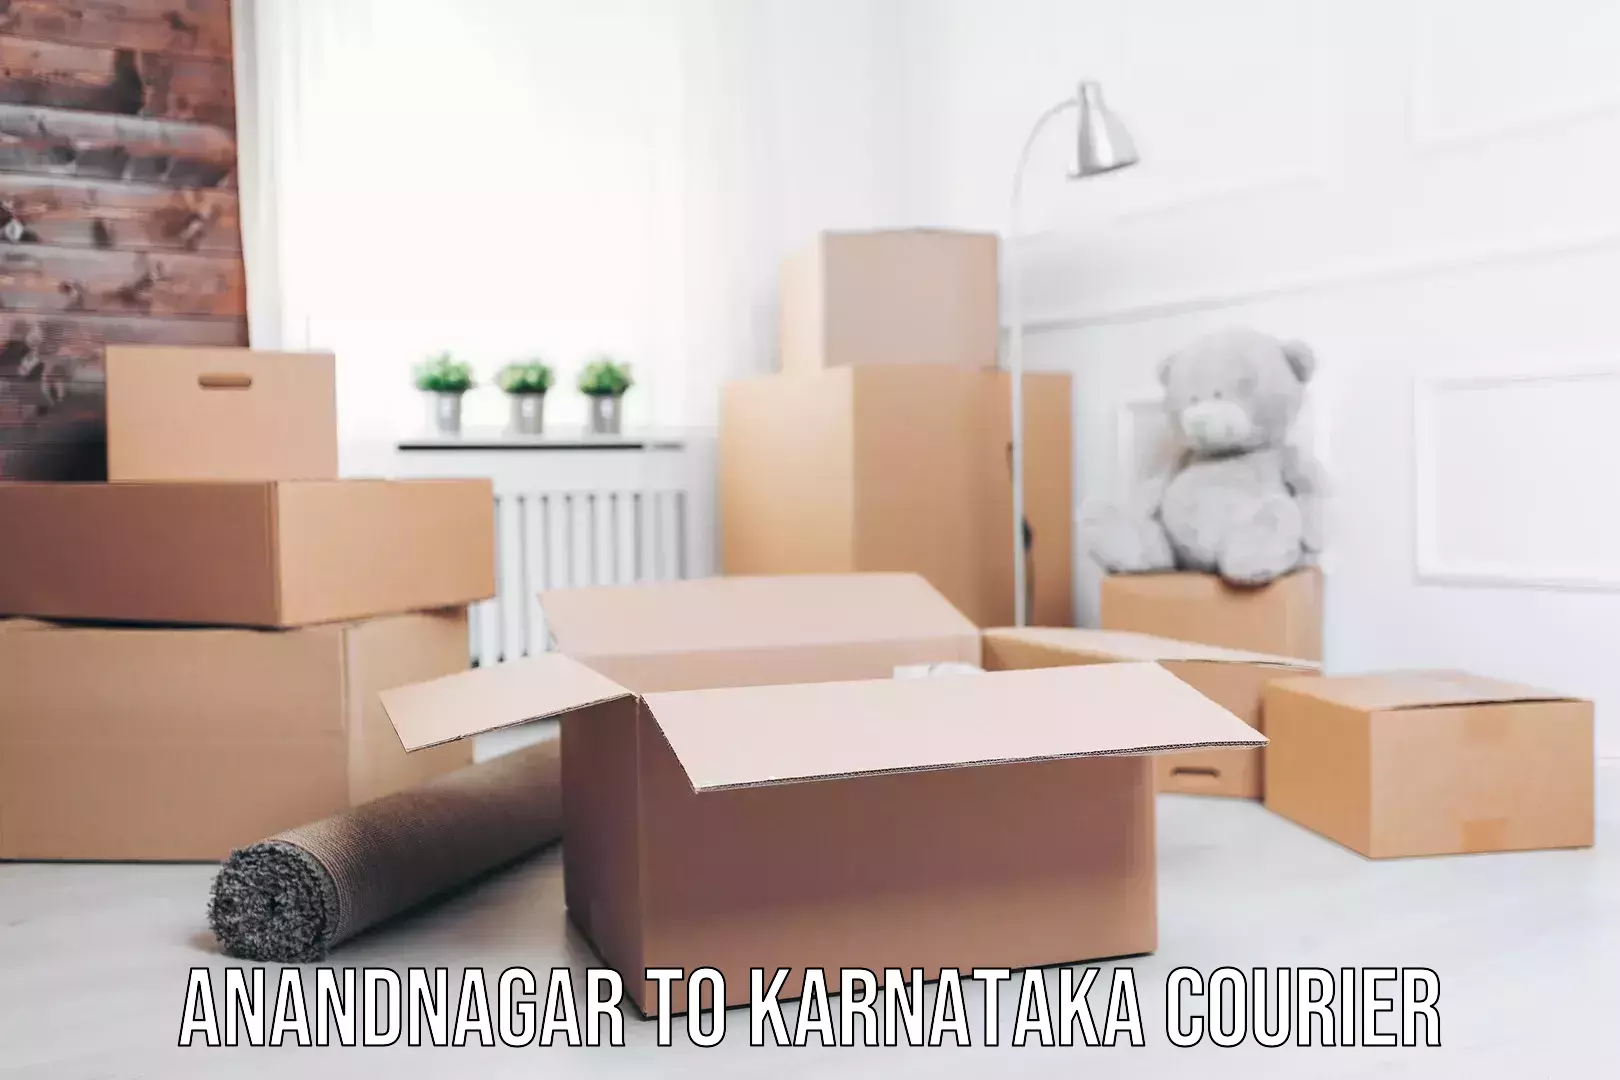 Regular parcel service Anandnagar to Karnataka